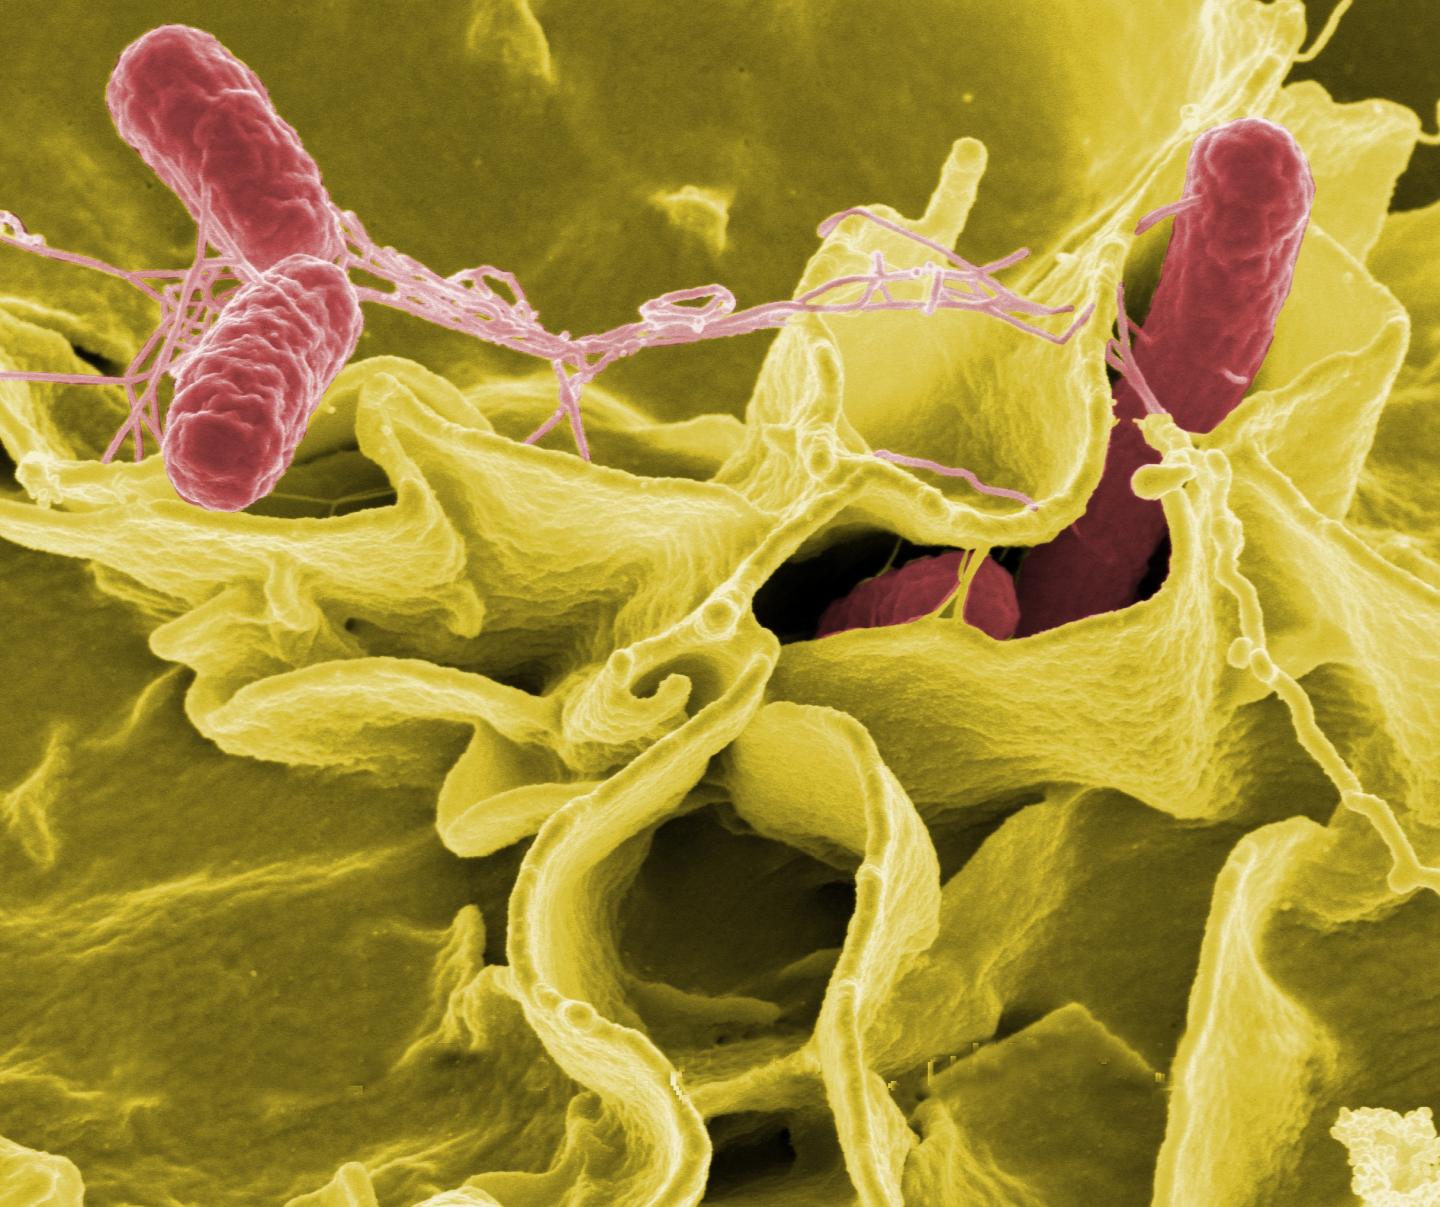 La bacteria Salmonella causa afección gastrointestinal (NIAID)